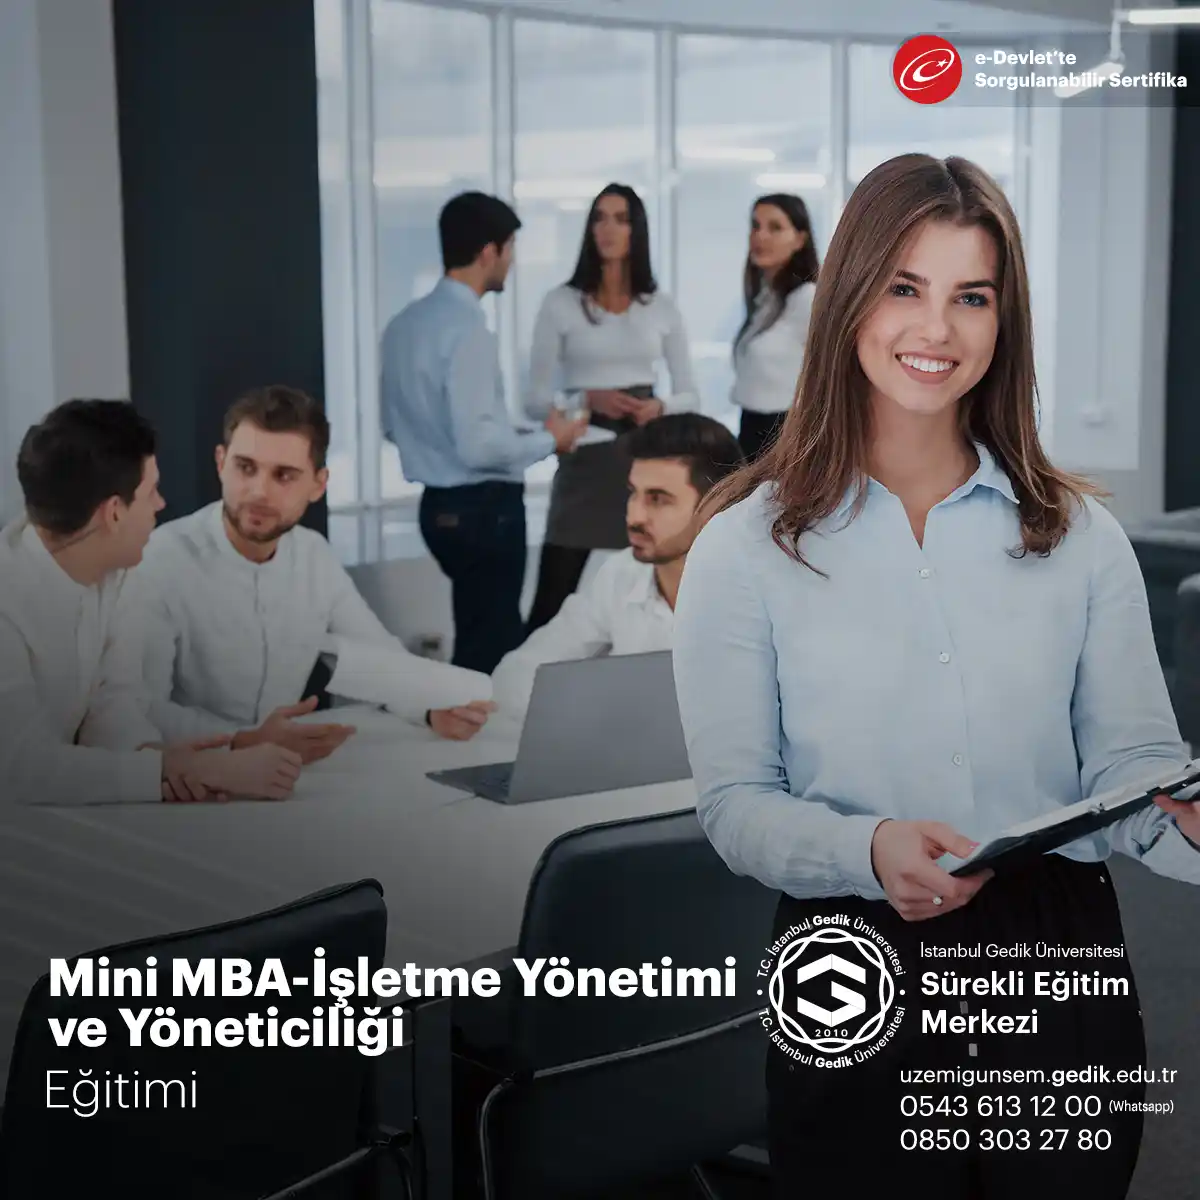 Mini MBA-İşletme Yönetimi ve Yöneticiliği Sertifika Programı